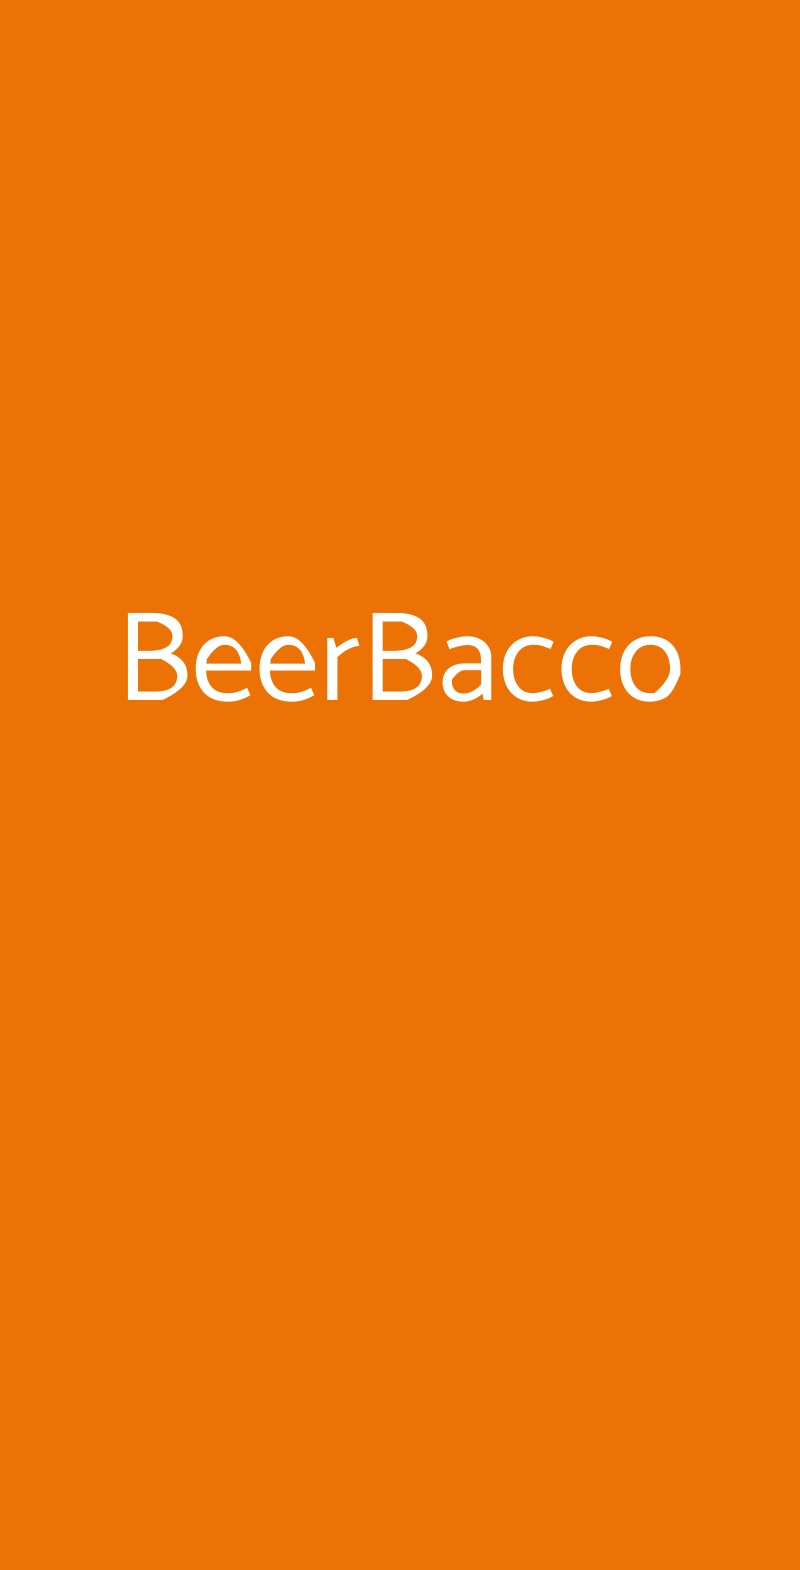 BeerBacco Milano menù 1 pagina